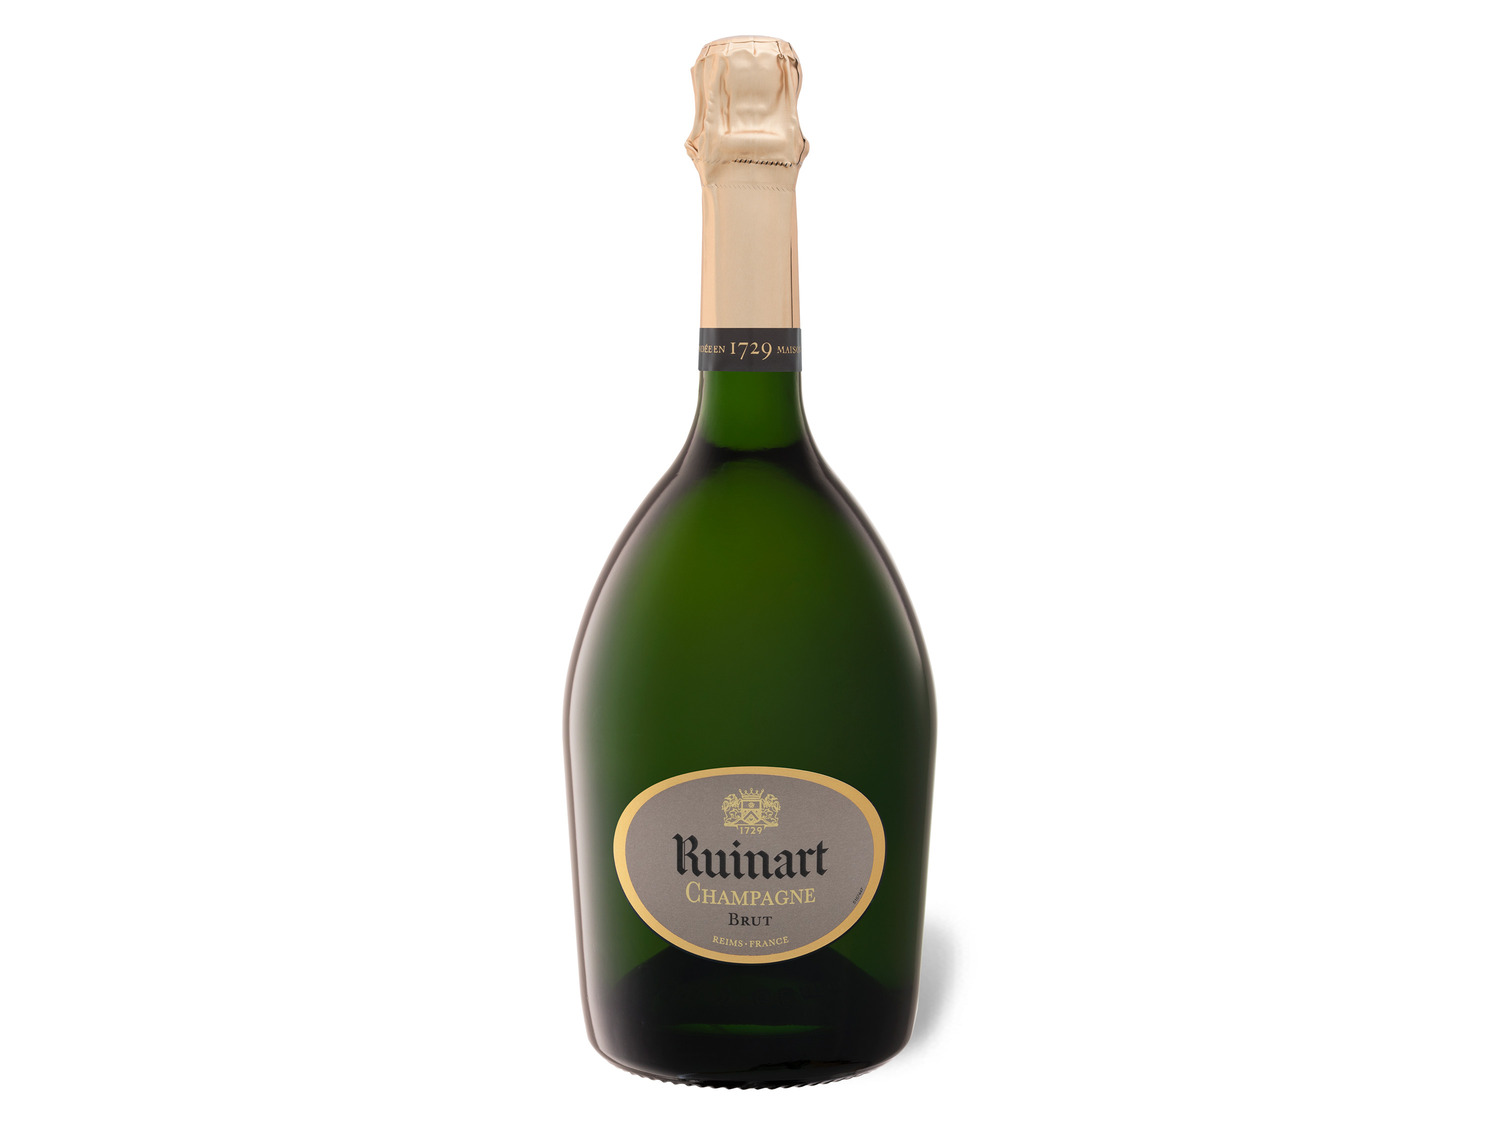 R de Ruinart Champagne brut, Champagner | LIDL